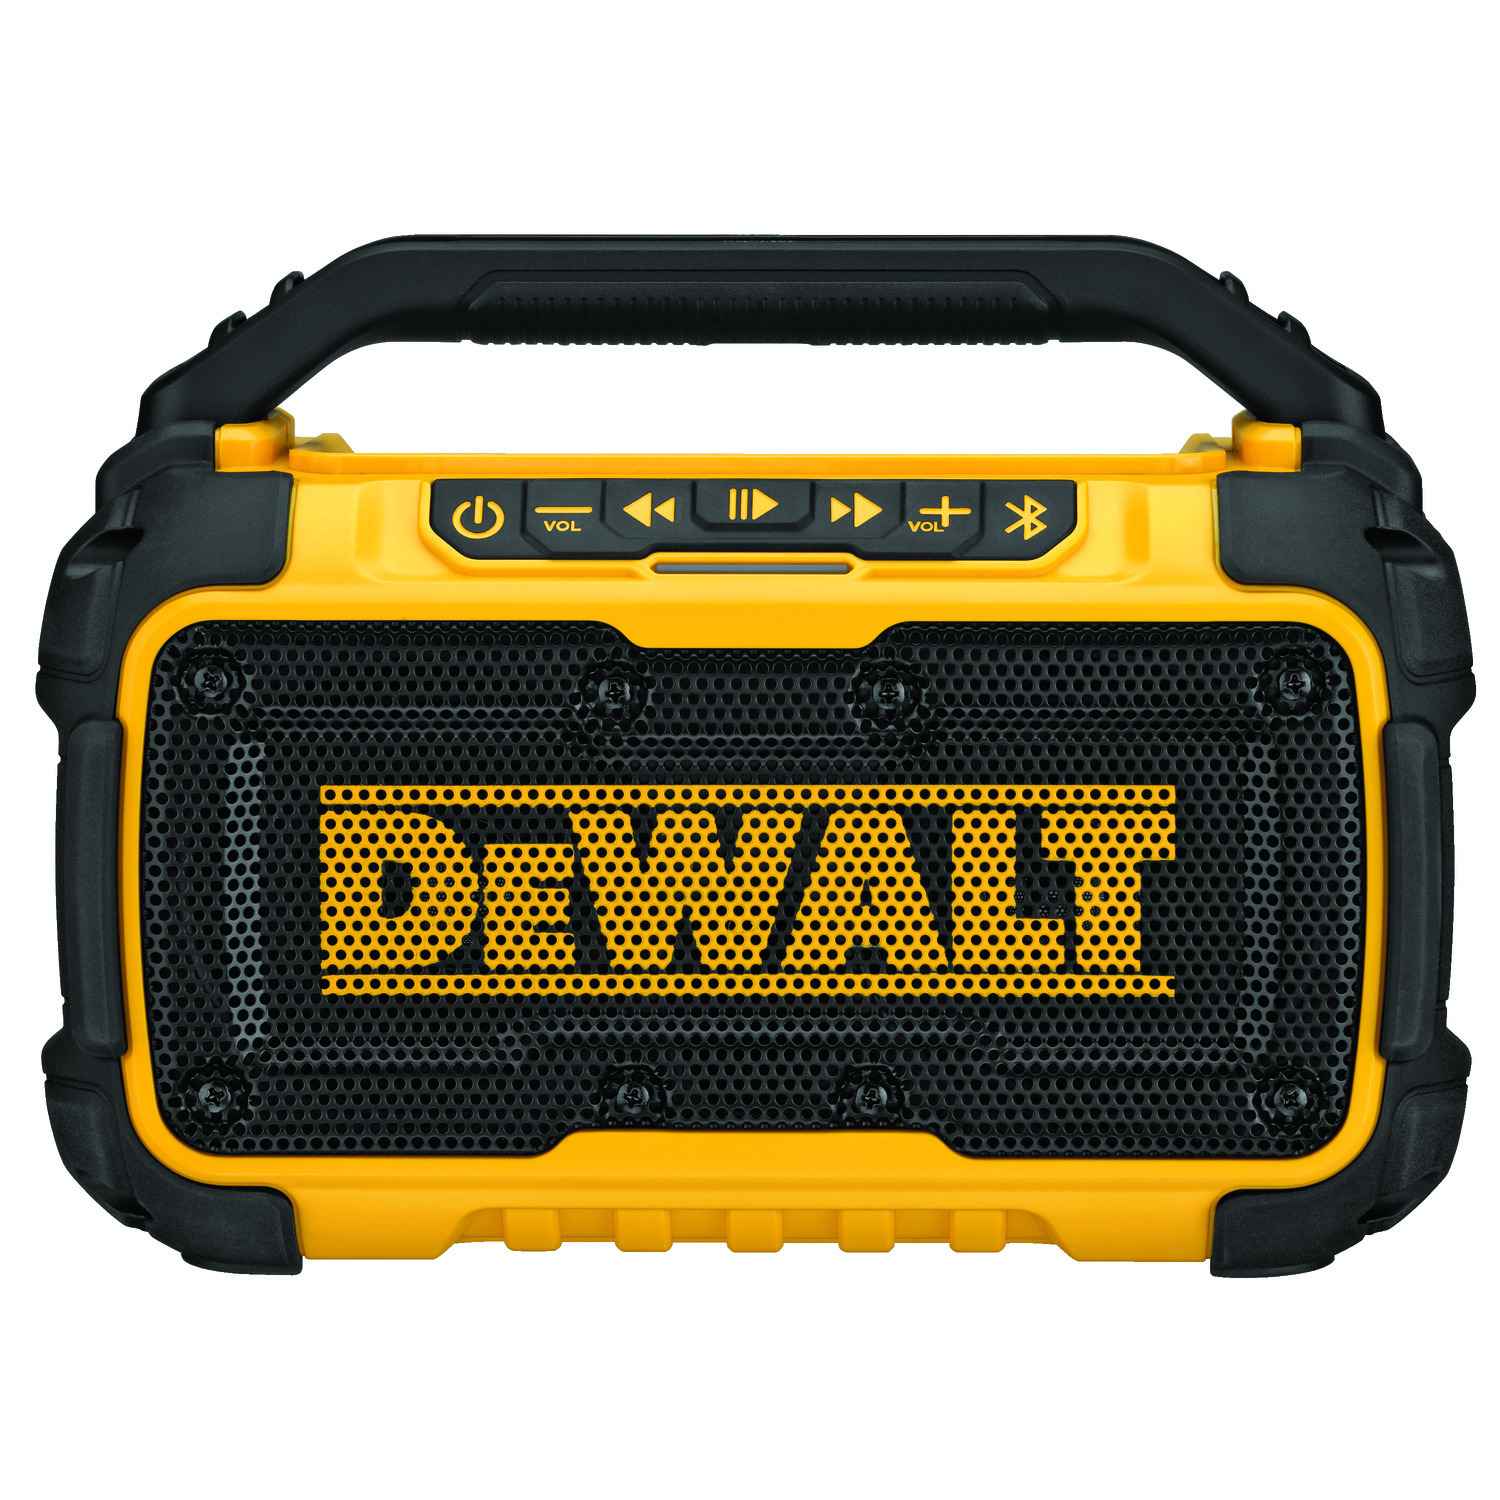 DEWALT 20V MAX DCR010 Lithium-Ion Jobsite Bluetooth Speaker 1 pc